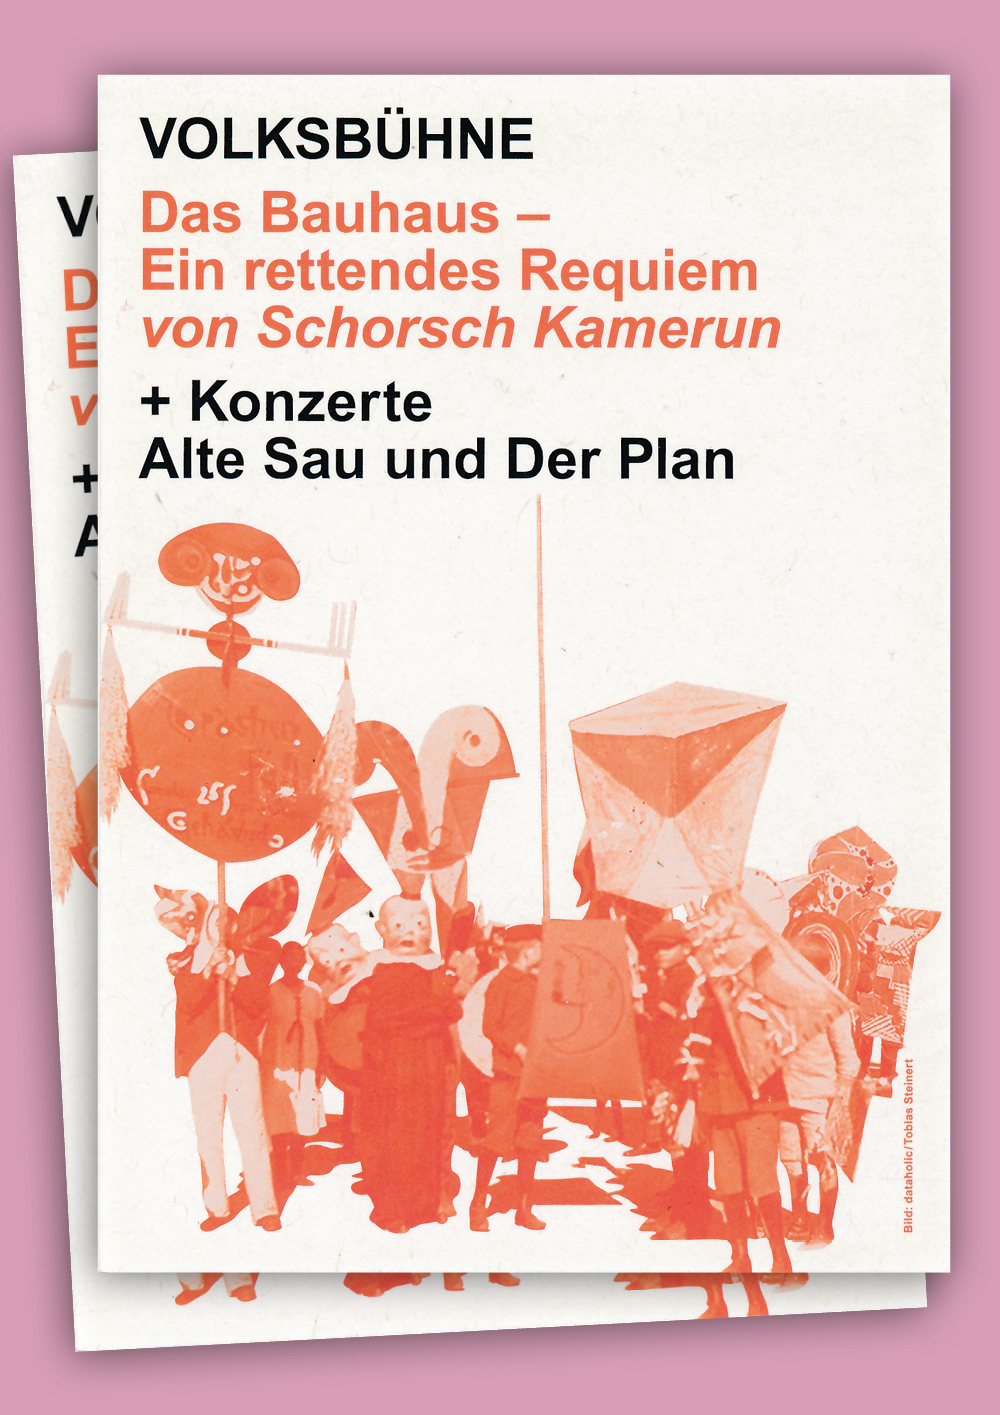 Plakat- und Postkartengestaltung für die VOLKSBÜHNE BERLIN -Schorsch Kamerun/Das Bauhaus Requiem